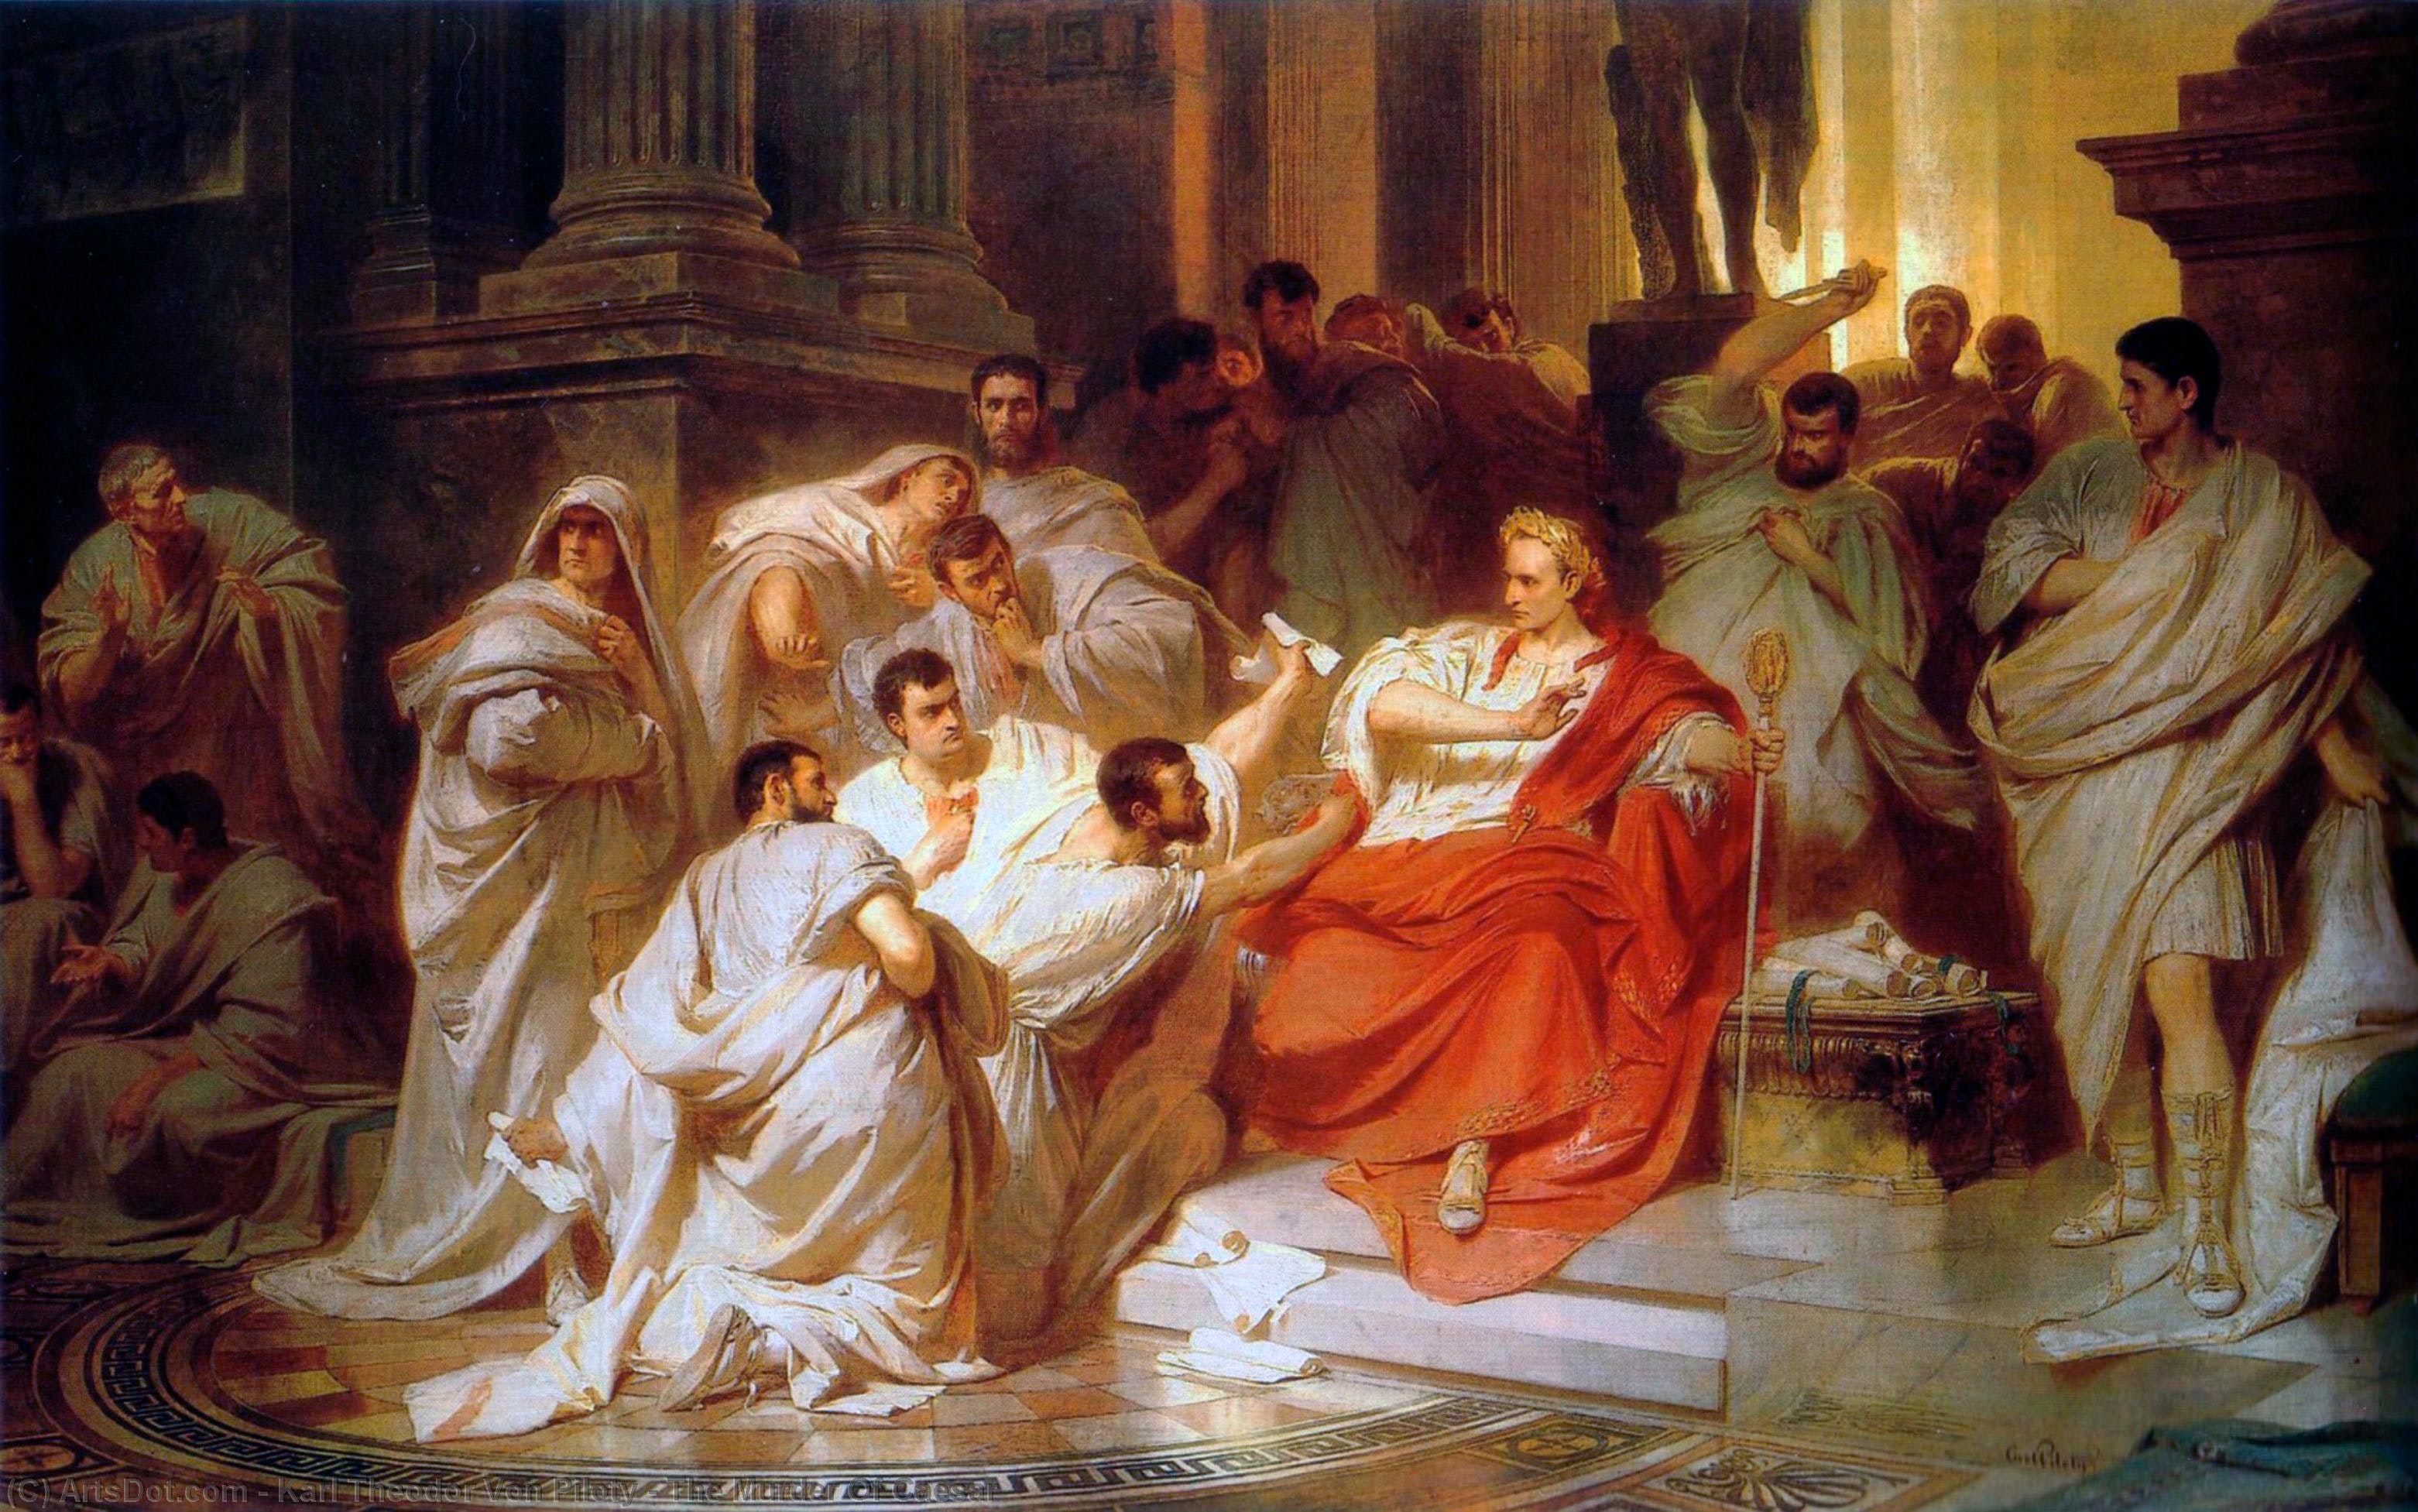 императоры древний рим